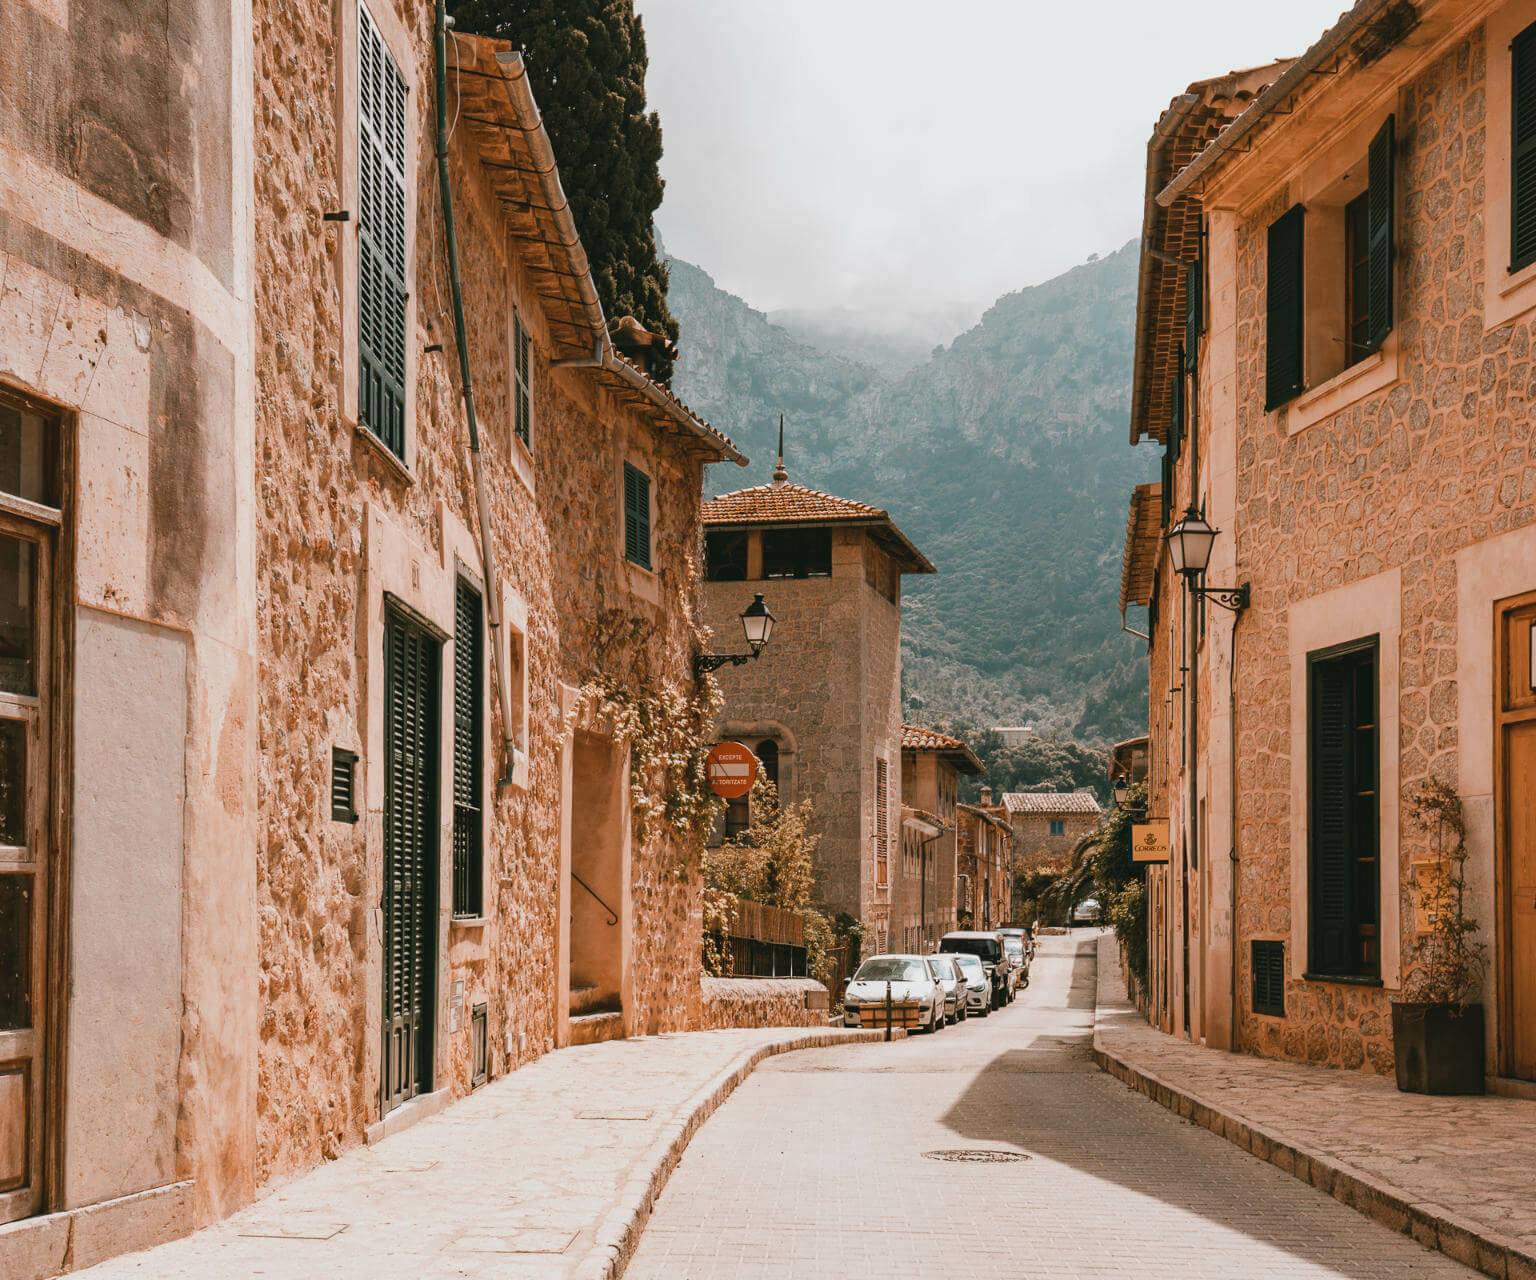 Eine ruhige kleine Straße zwischen den Häusern im ruhigen Deià auf Mallorca.